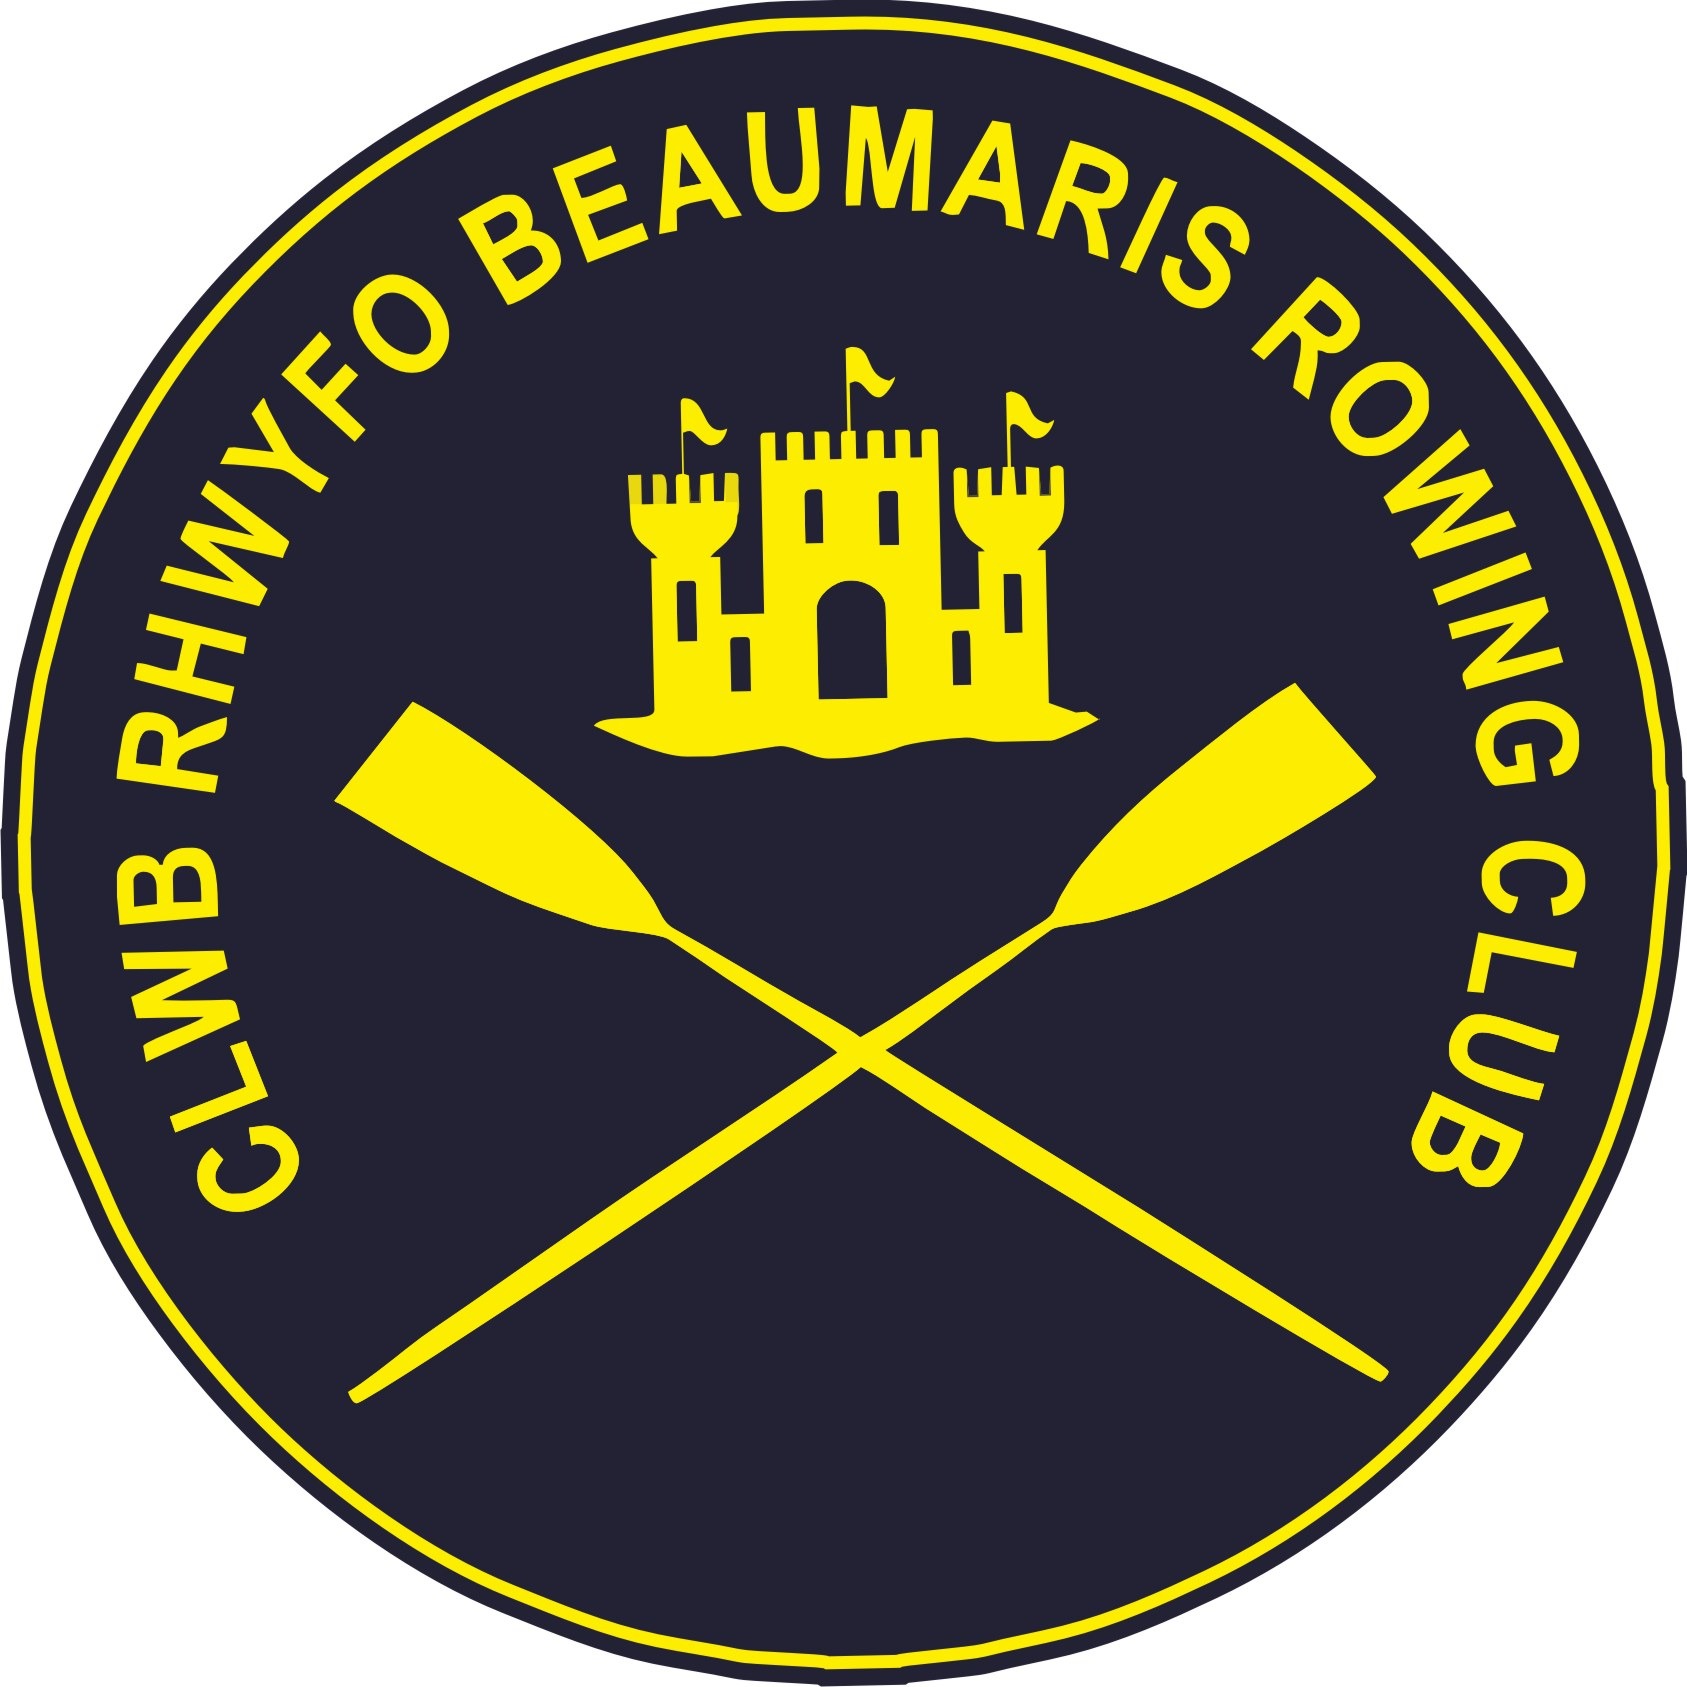 Clwb Rhwyfo Beaumaris Rowing Club